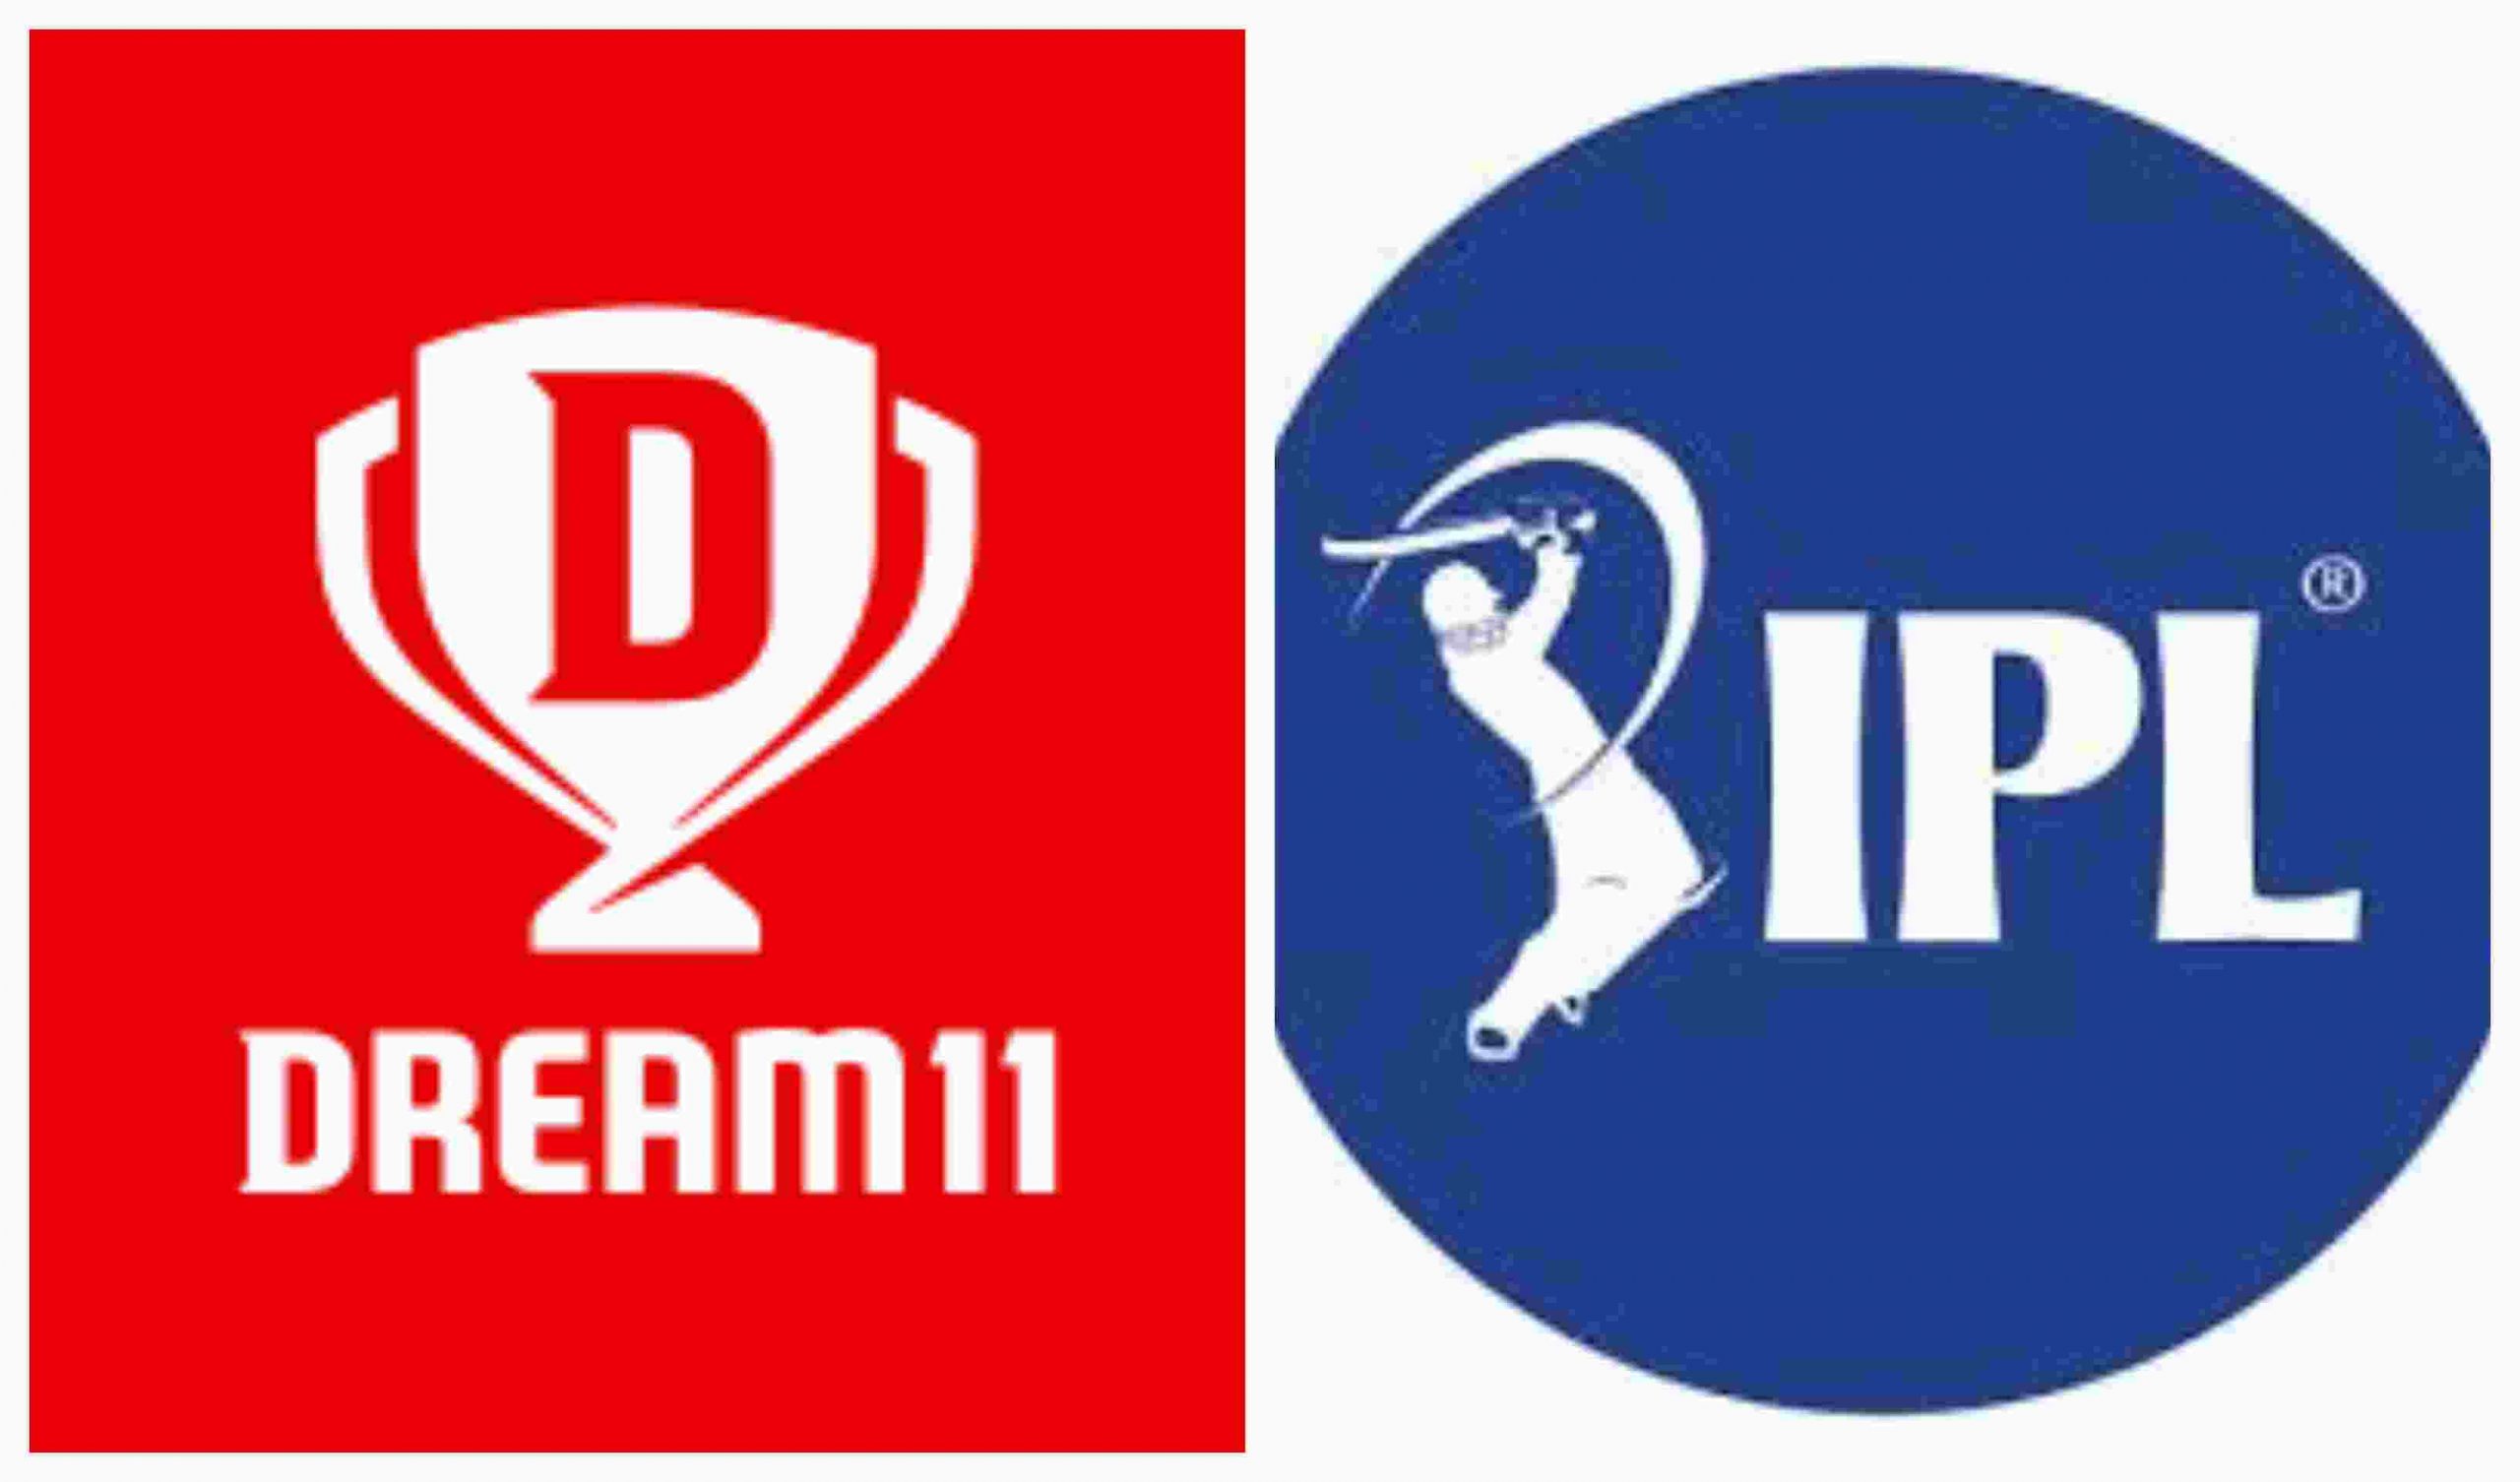 Dream 11 IPL sponsor